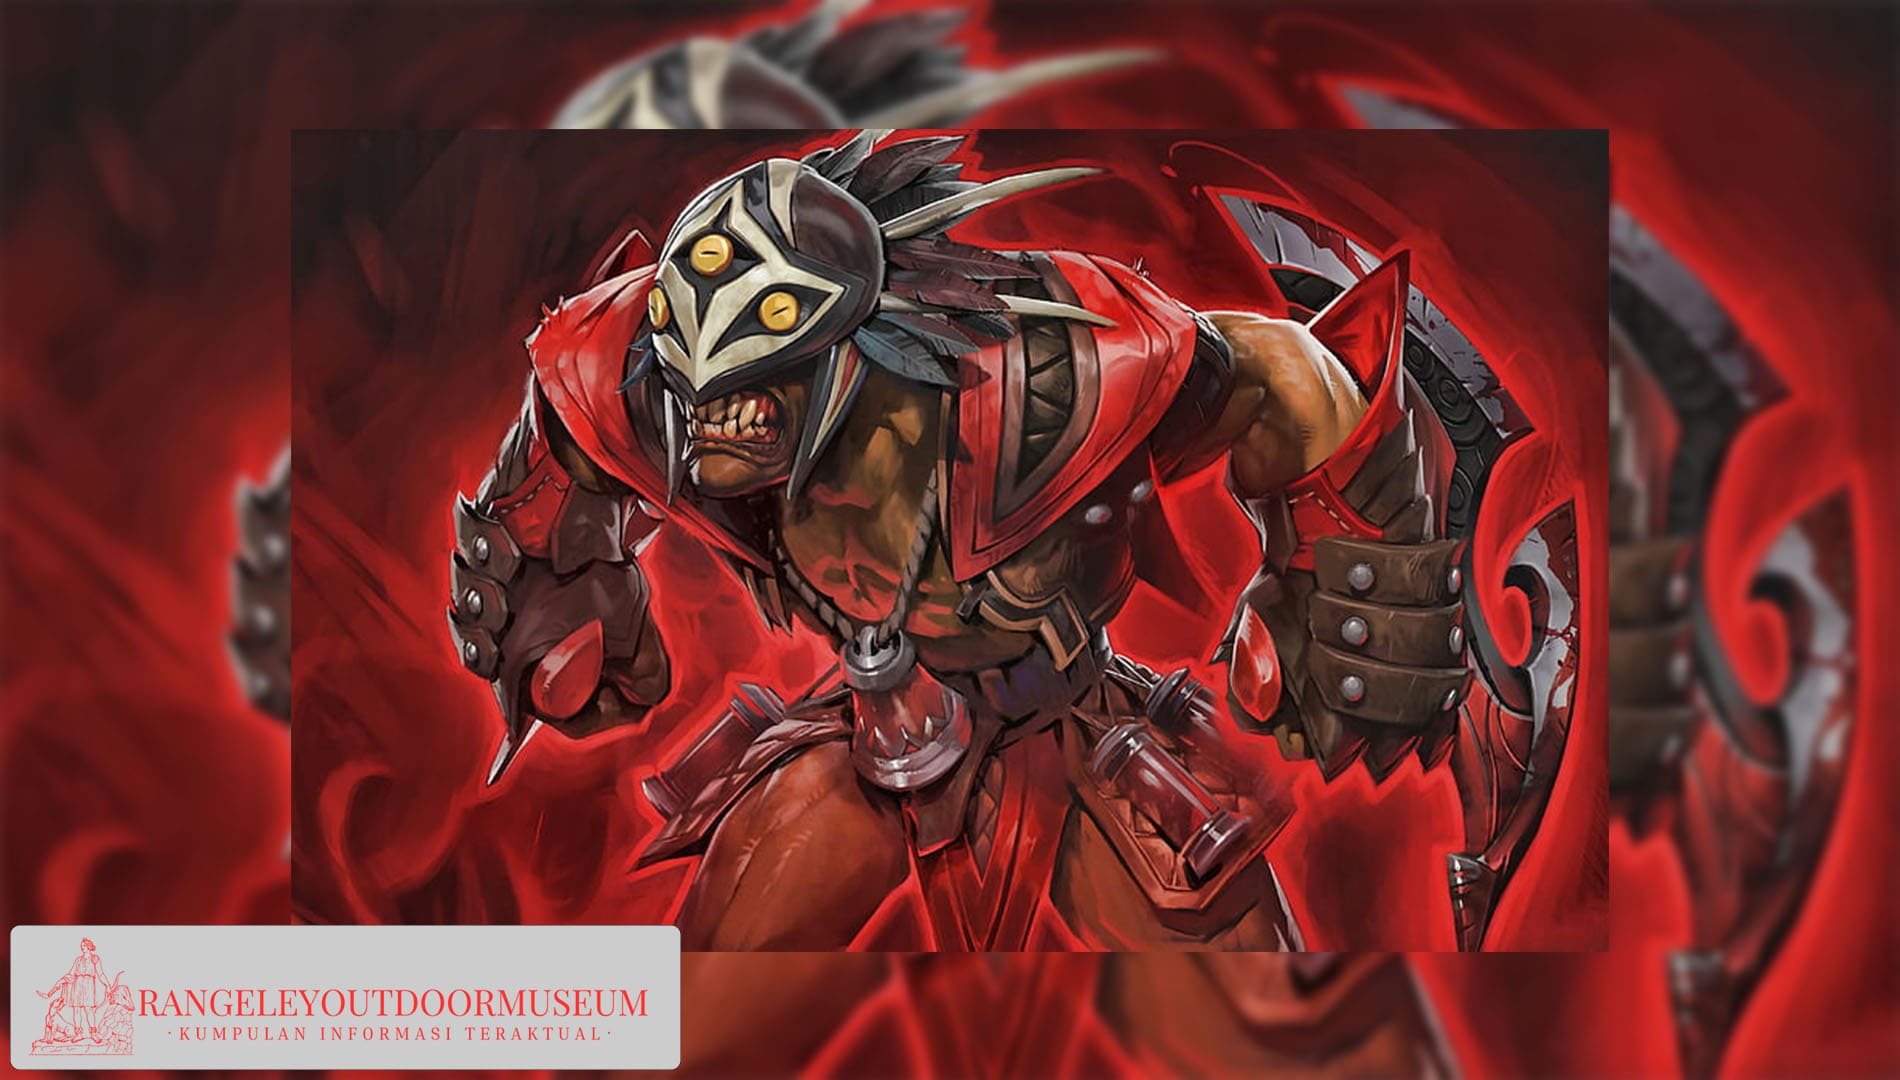 Bloodseeker: The Brutal Predator of Dota 2